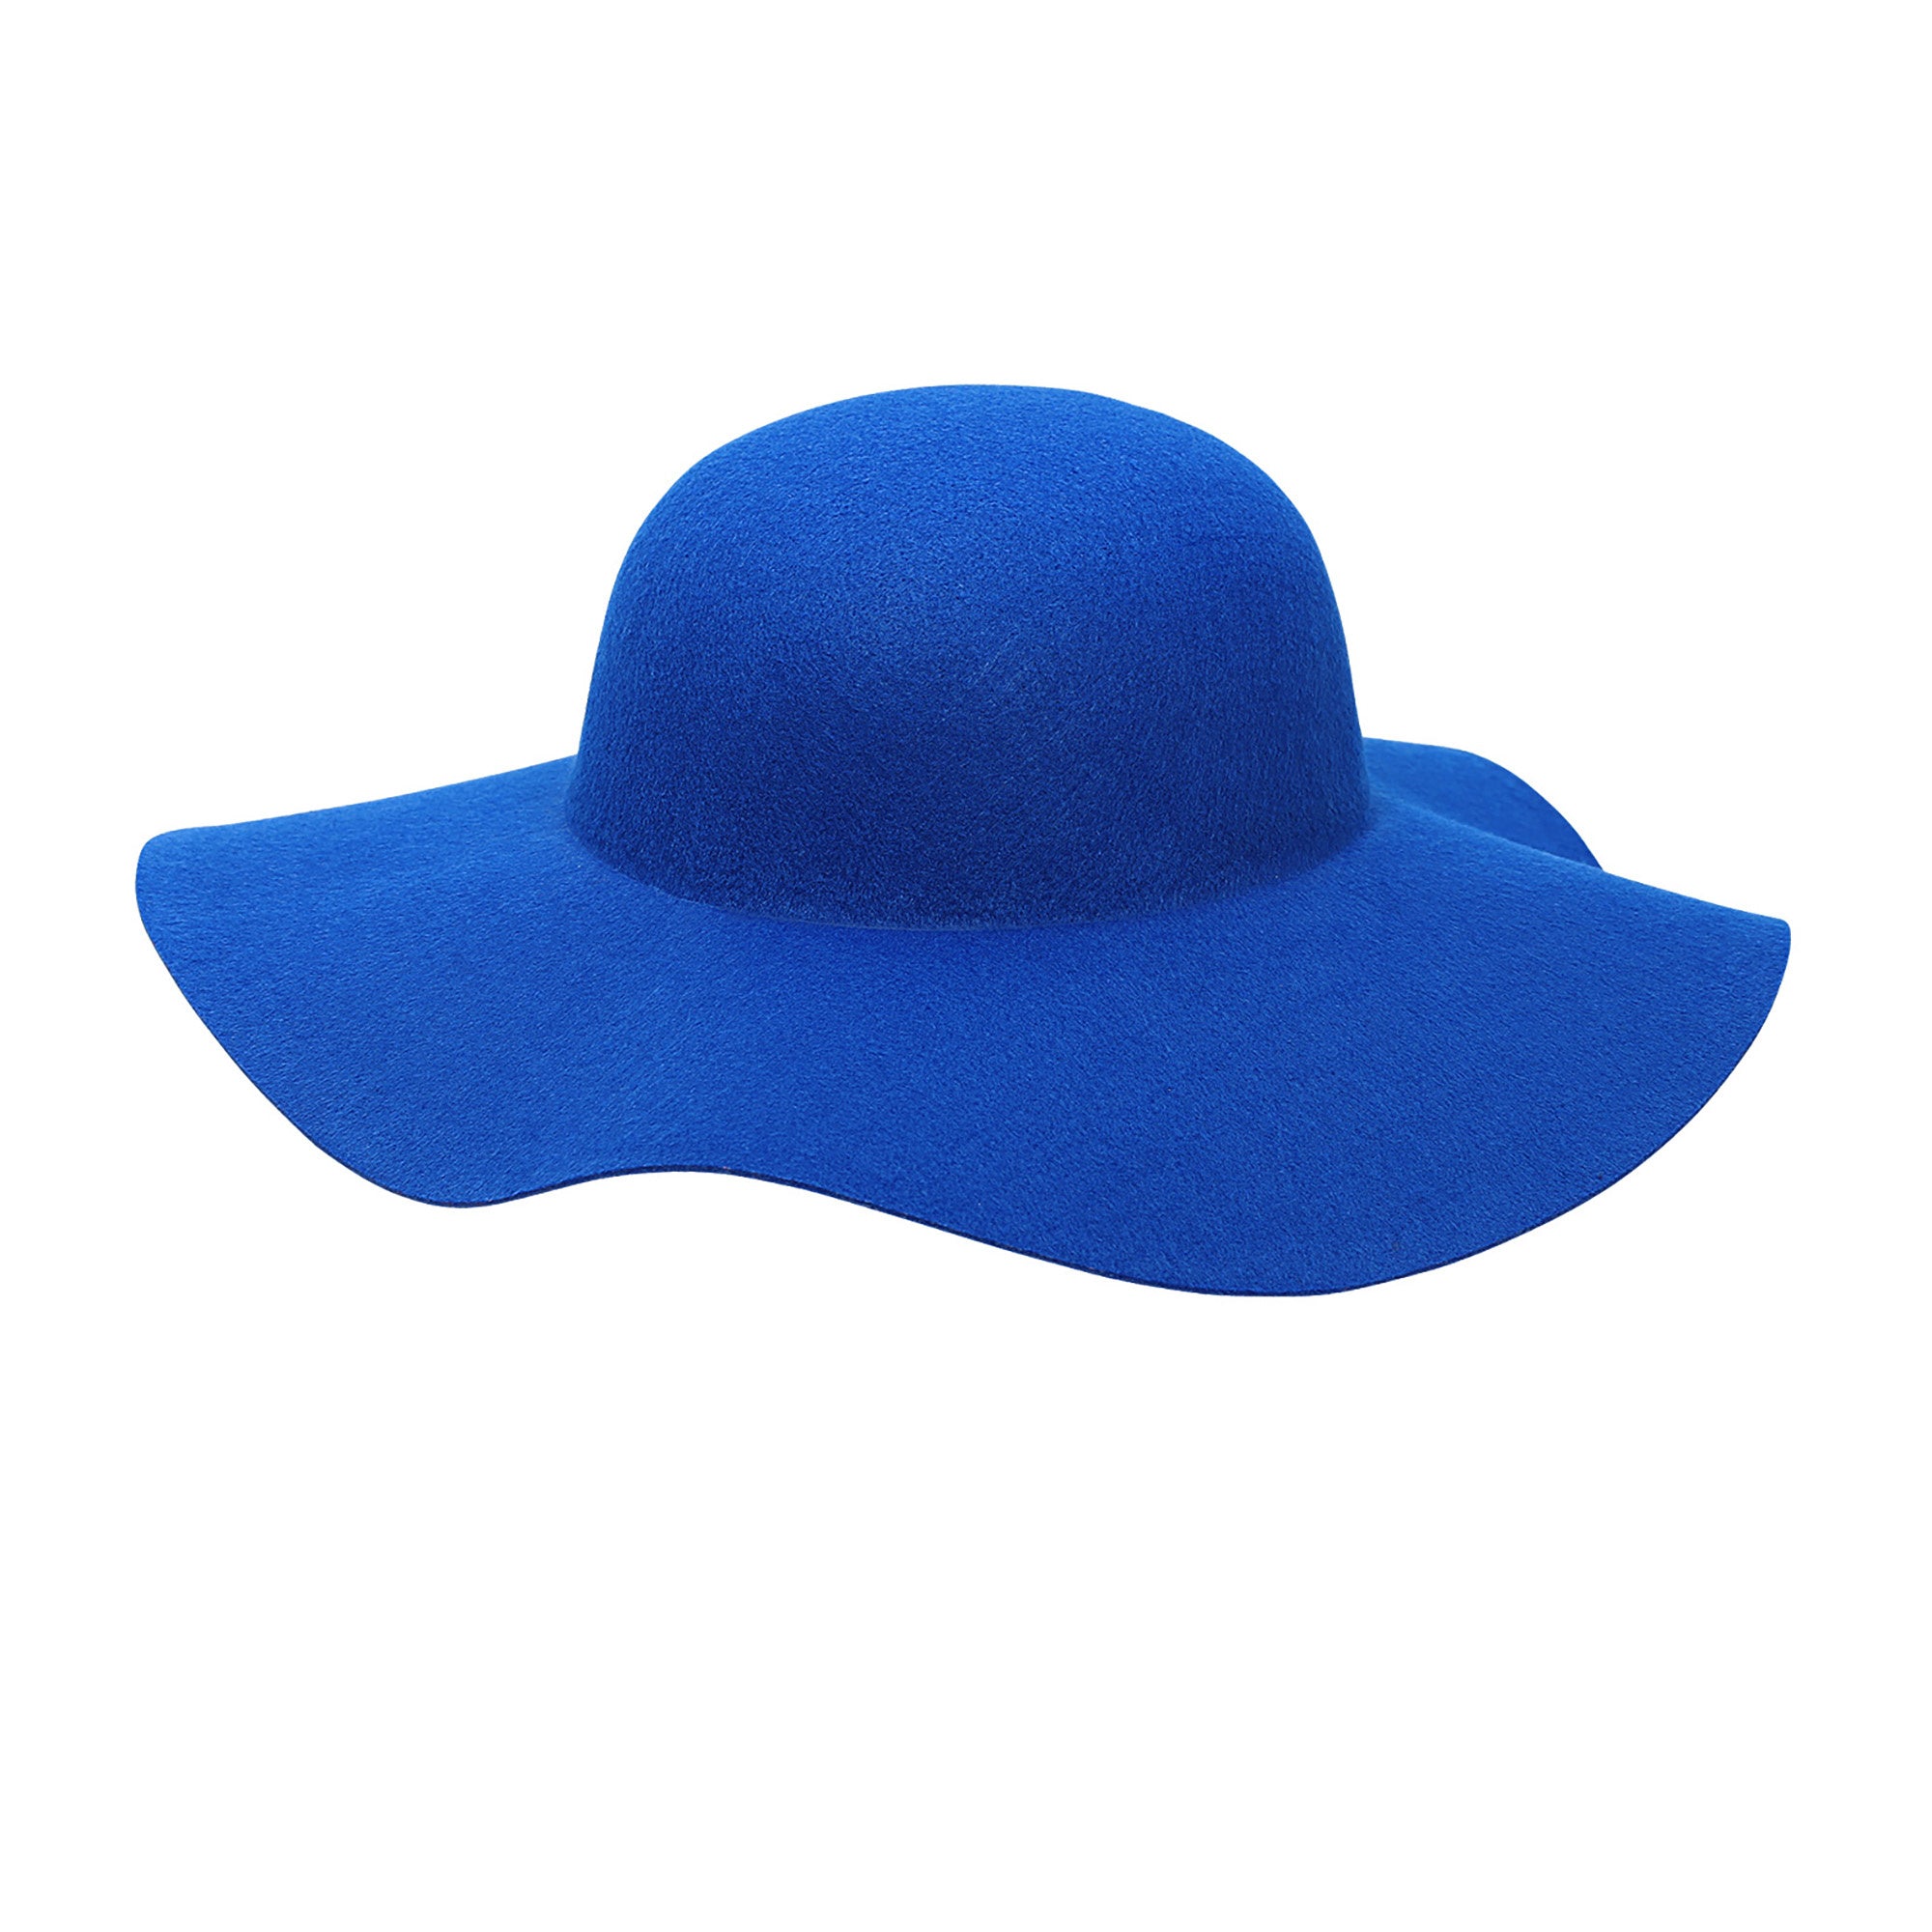 Widmann -Blauwe Hippie Hoed Brede Rand - blauw - Carnavalskleding - Verkleedkleding